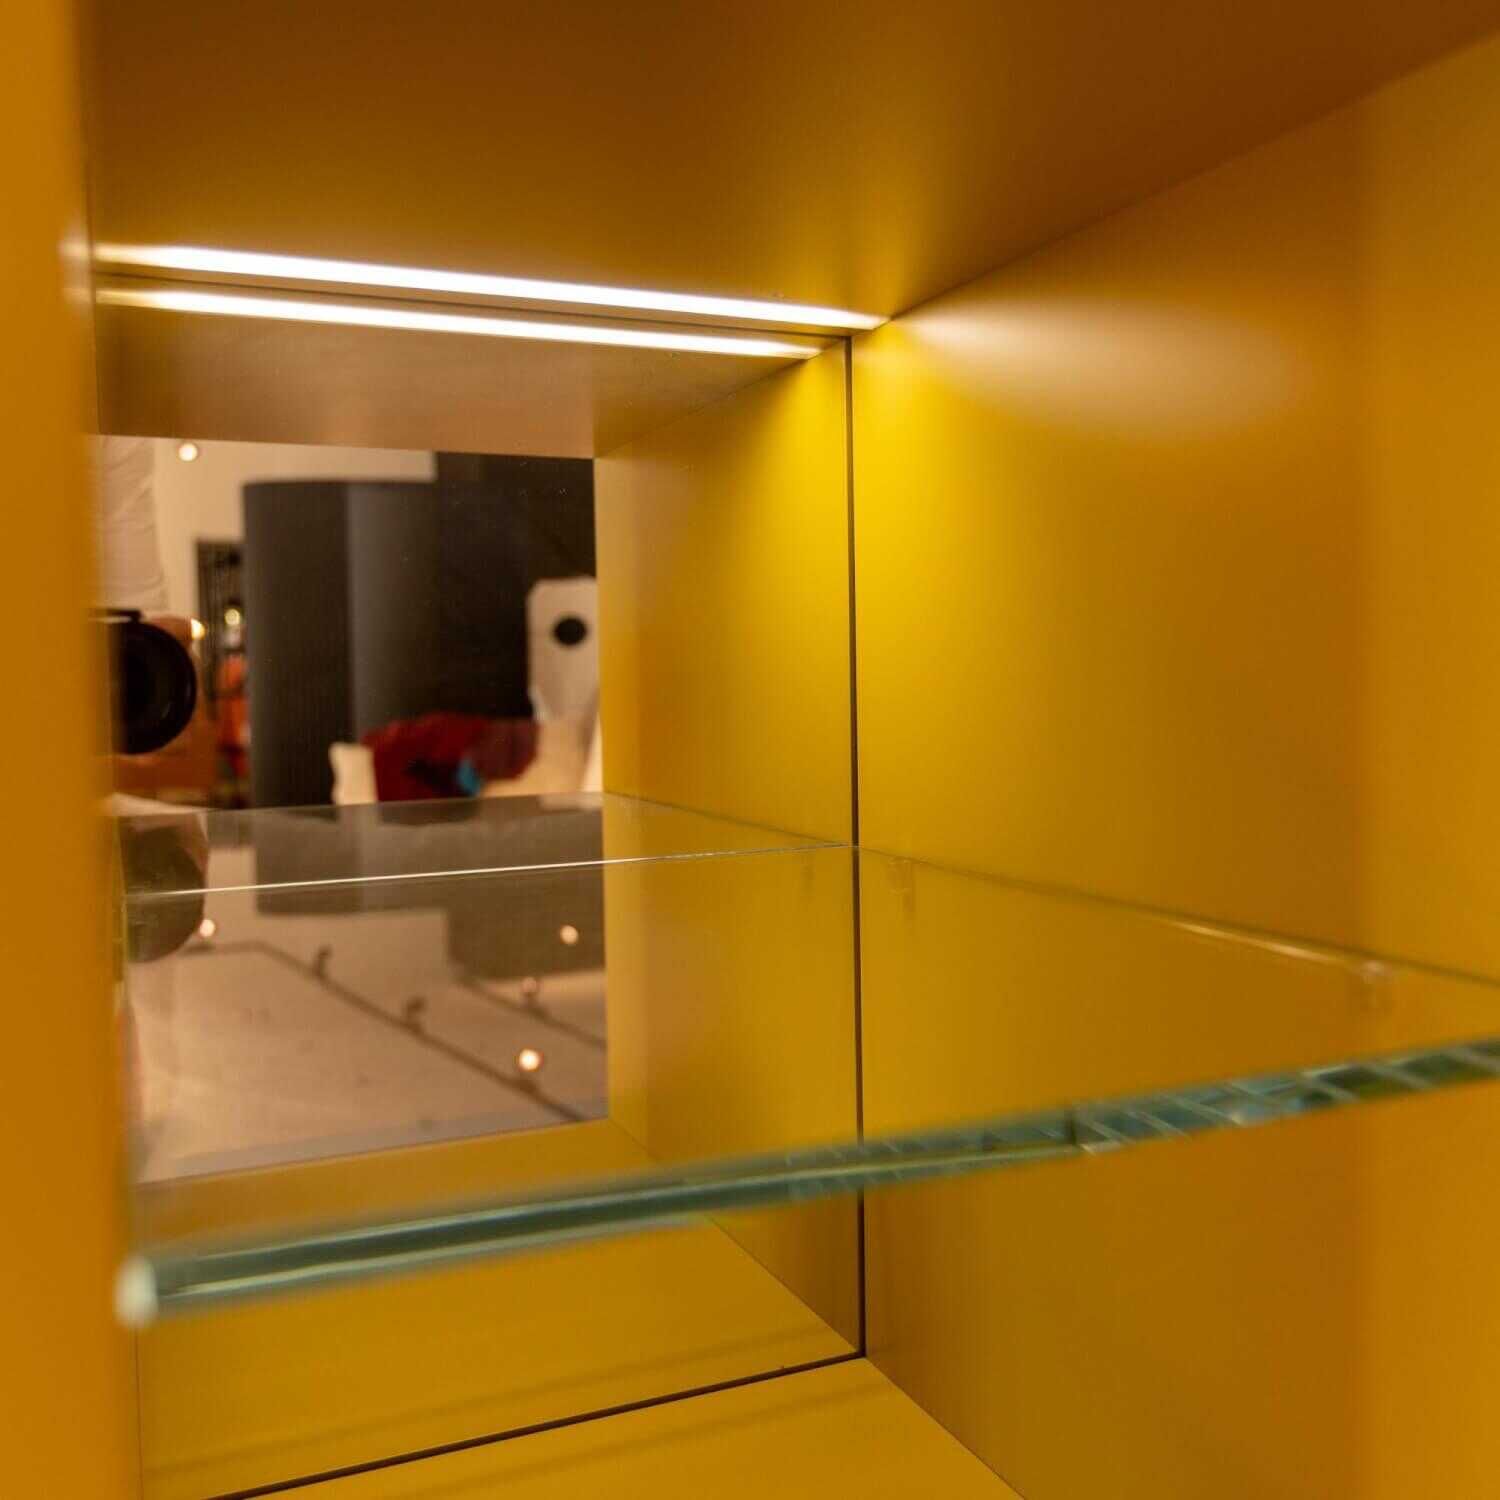 Gallery Low Cupboard Außen Holzfarbe W20 Mongoi Innen Giallo Mustard Rückwand Spiegel Mit Beleuchtun